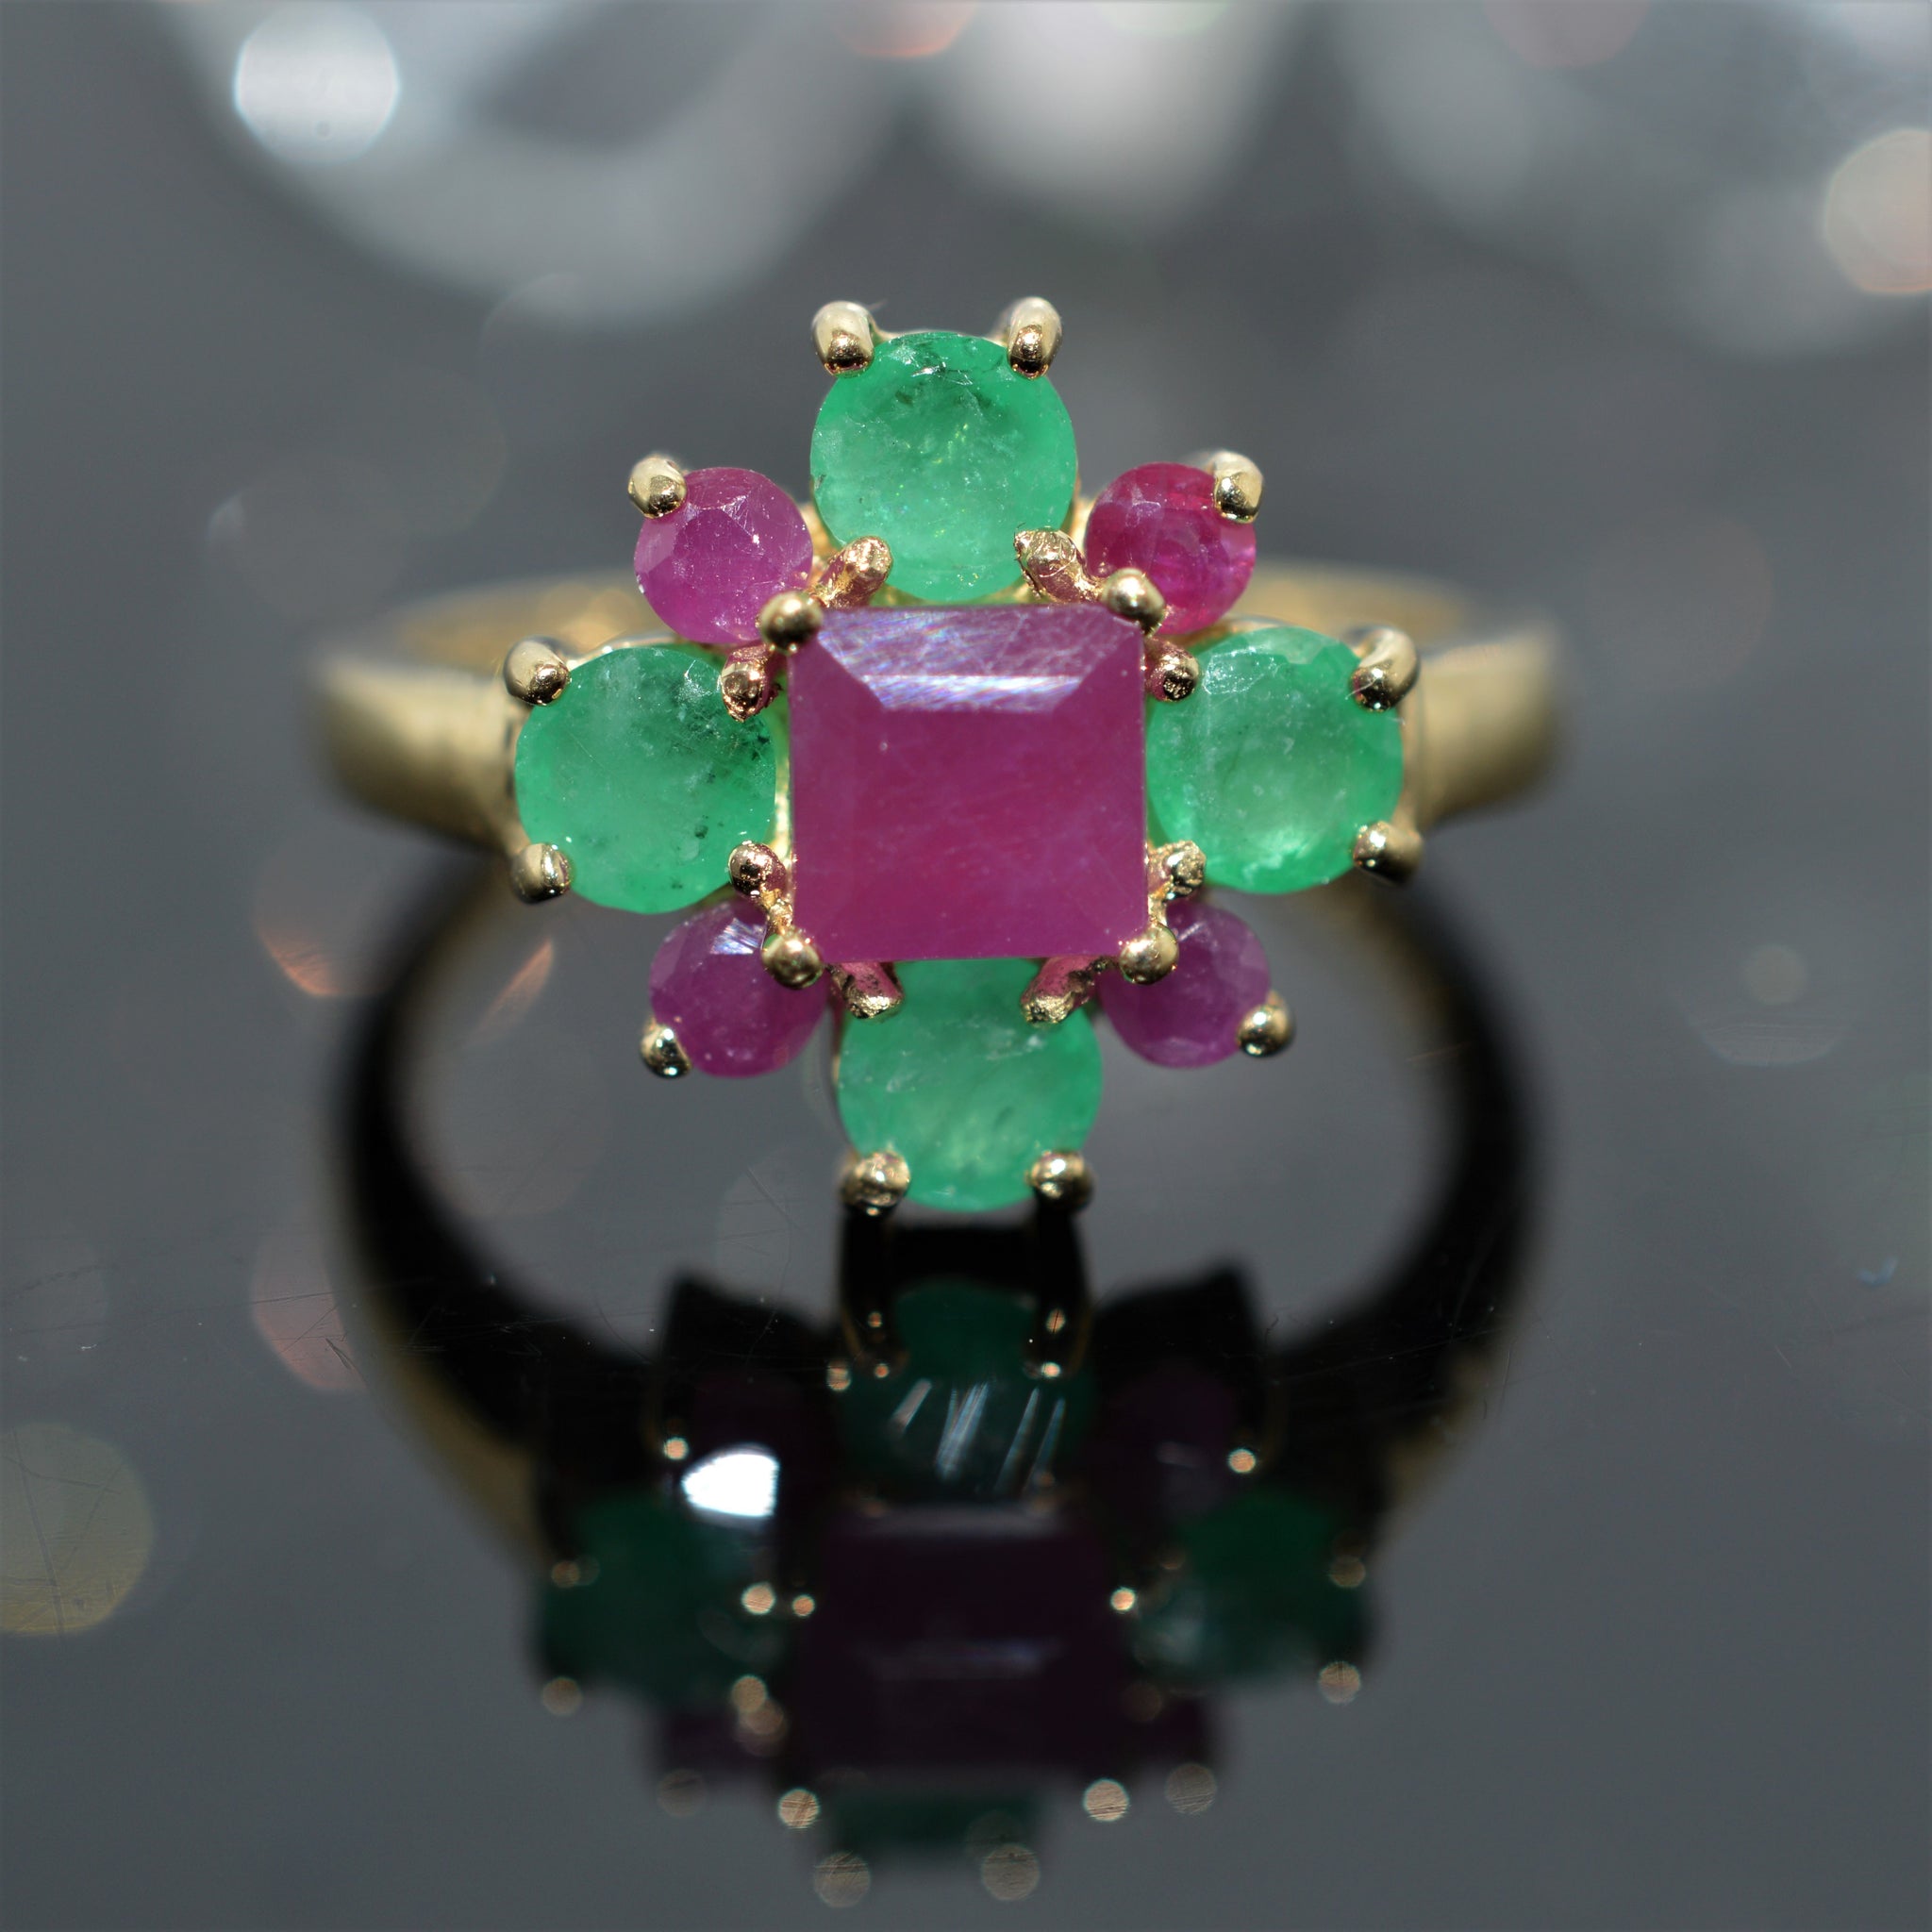 RAQIE Jewelry + Accessories | Emerald Ruby Sapphire 14k Gold Ring | Raqie